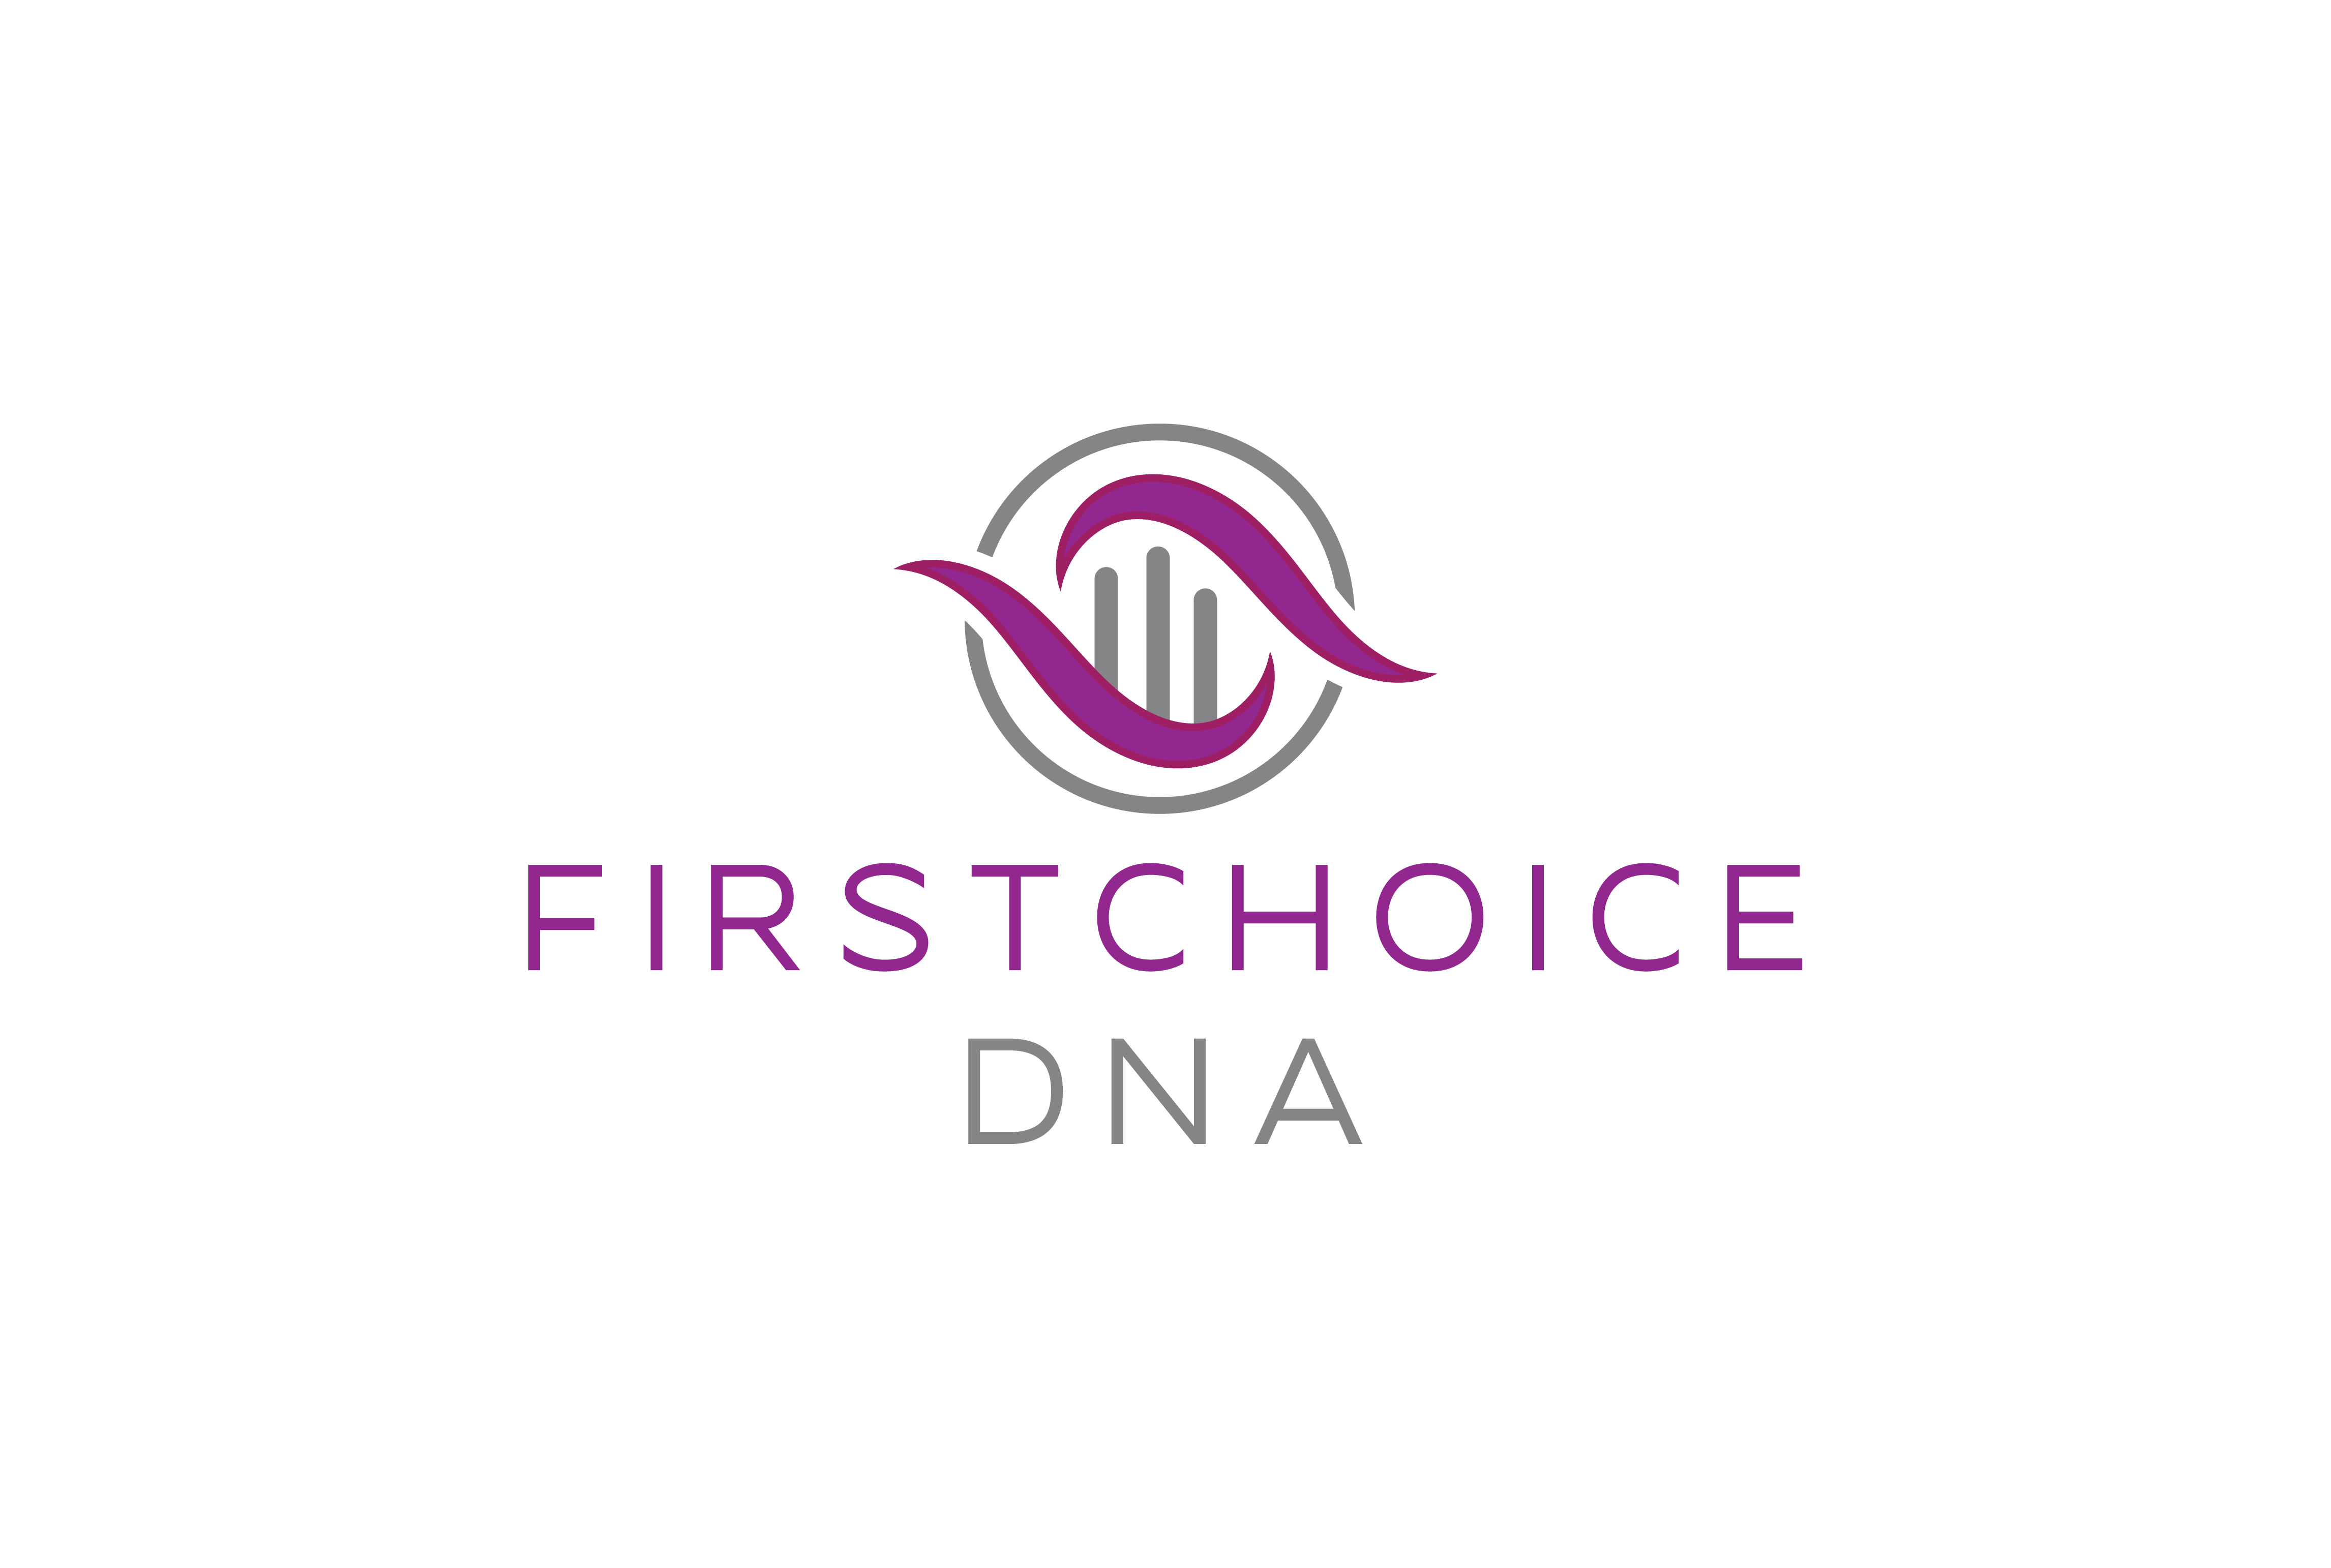 First Choice DNA